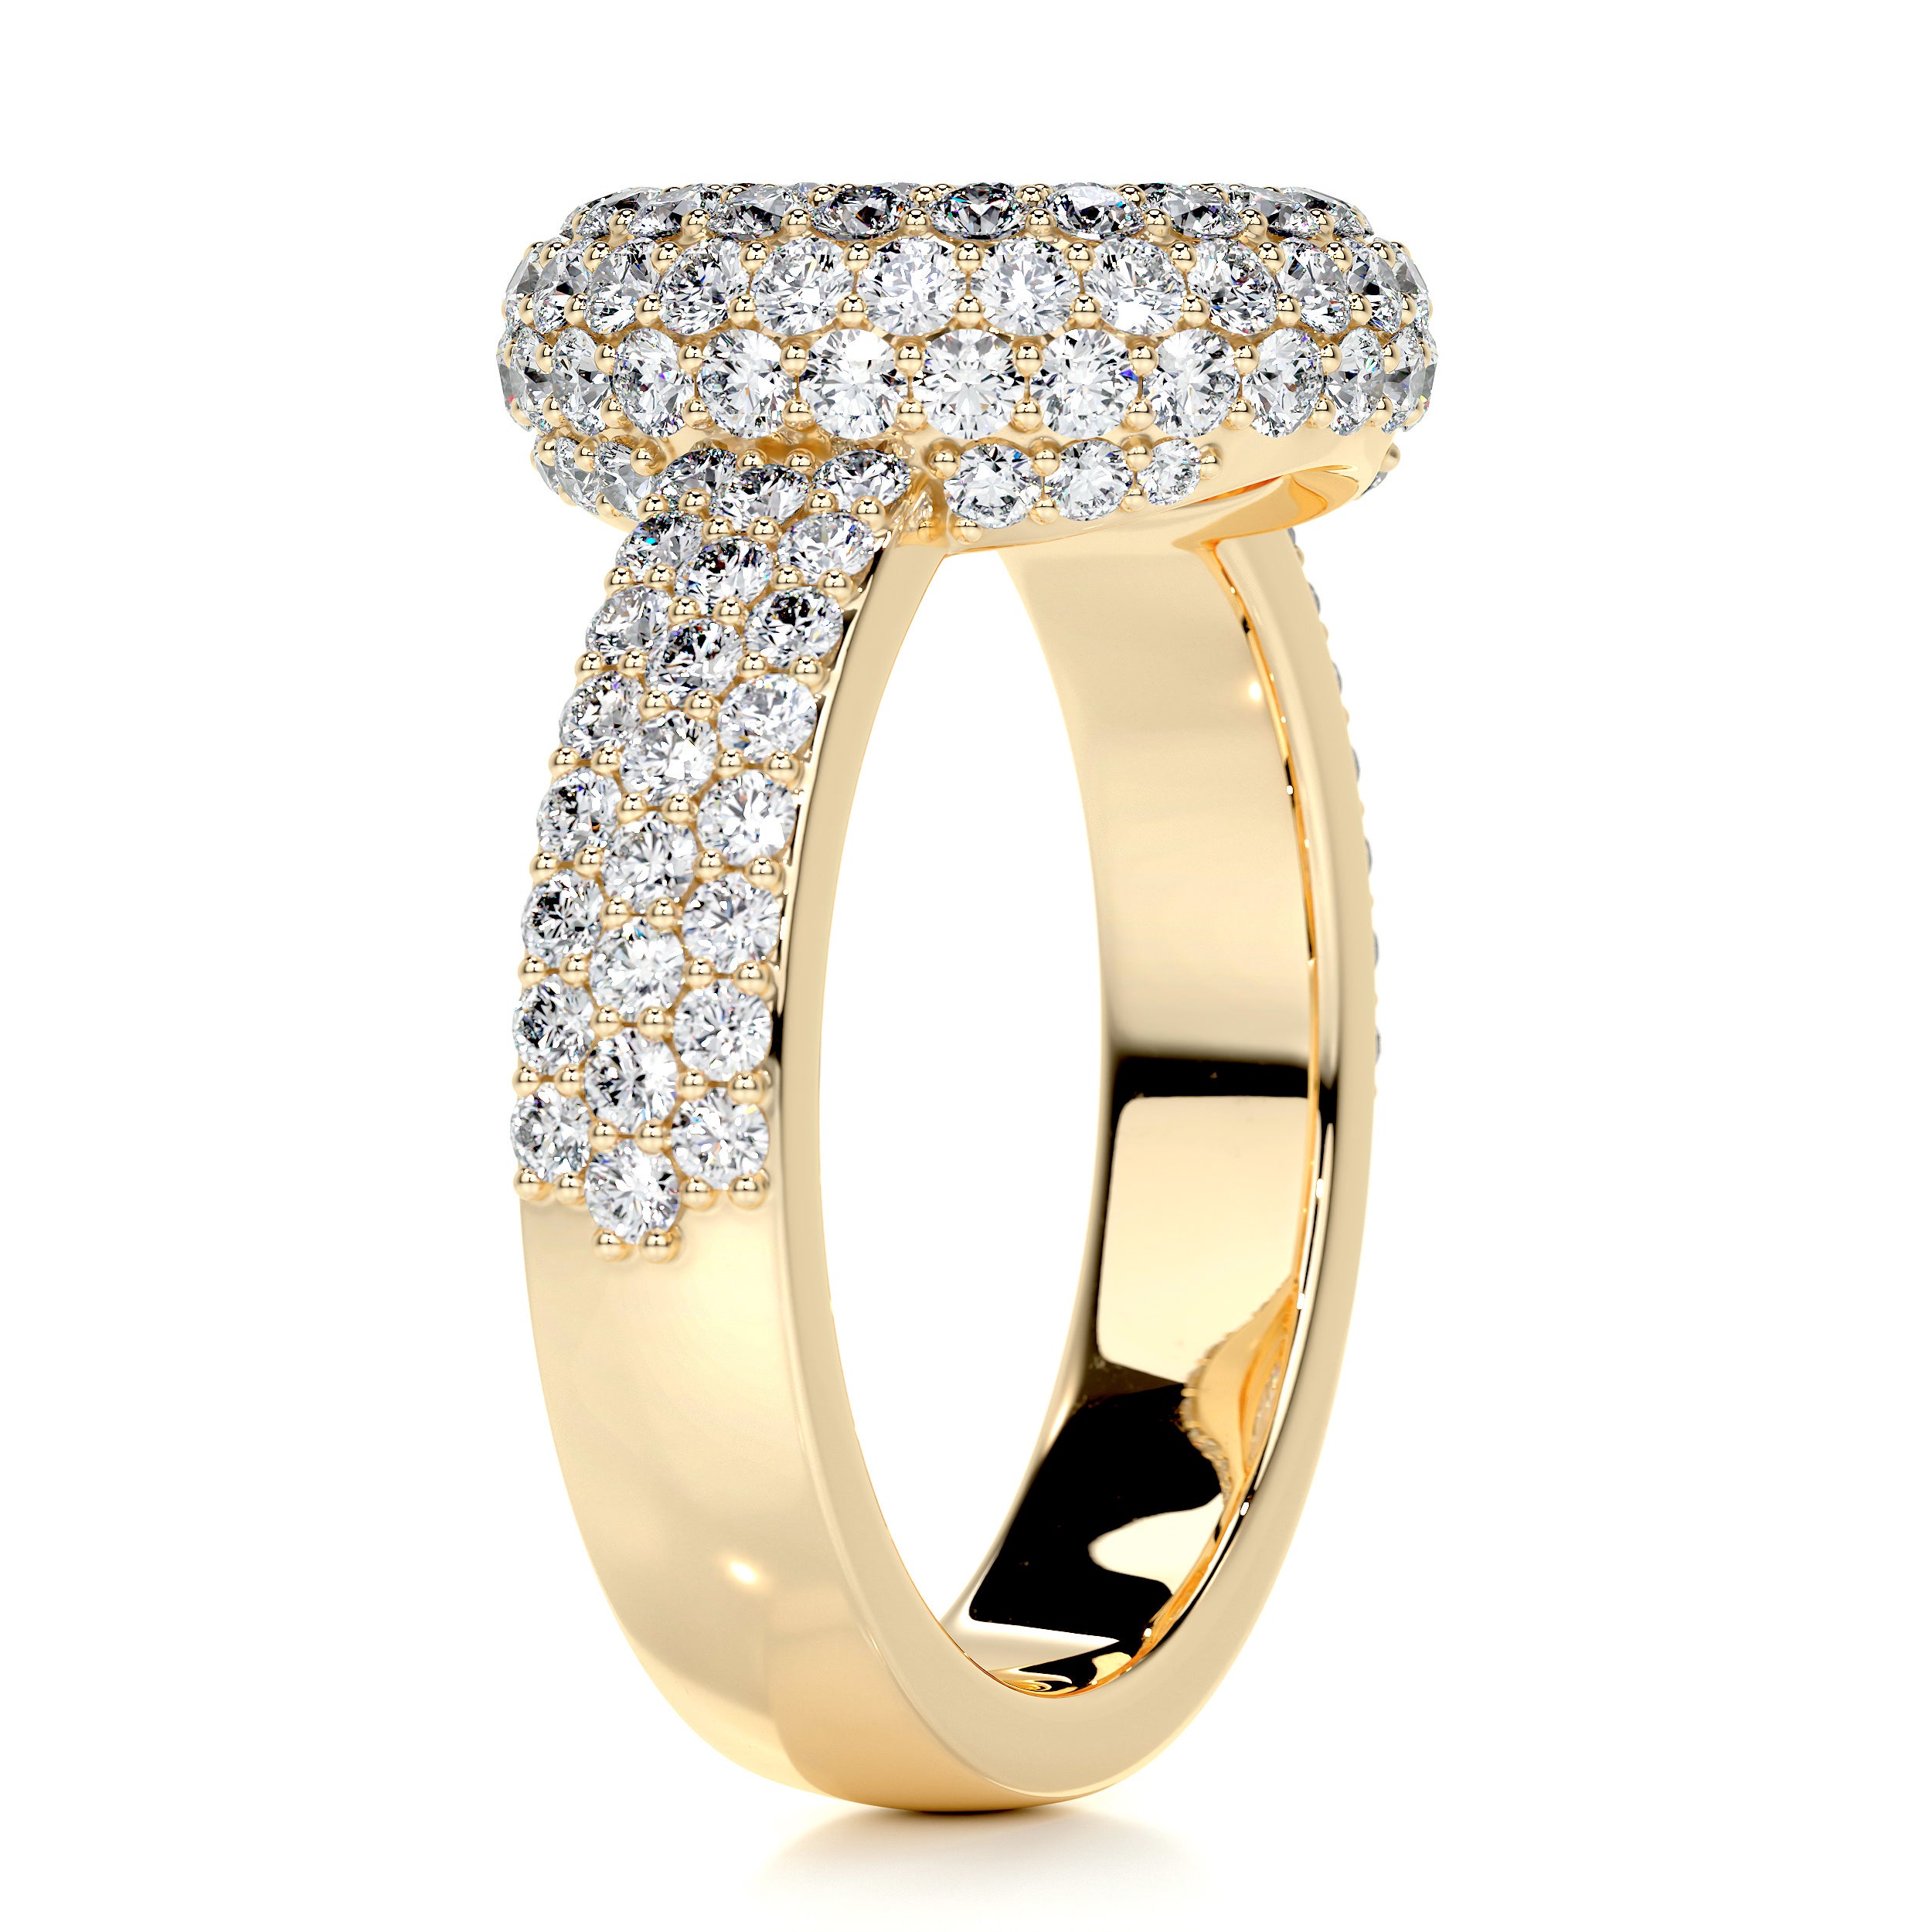 Reagan Diamond Engagement Ring   (2.25 Carat) -18K Yellow Gold